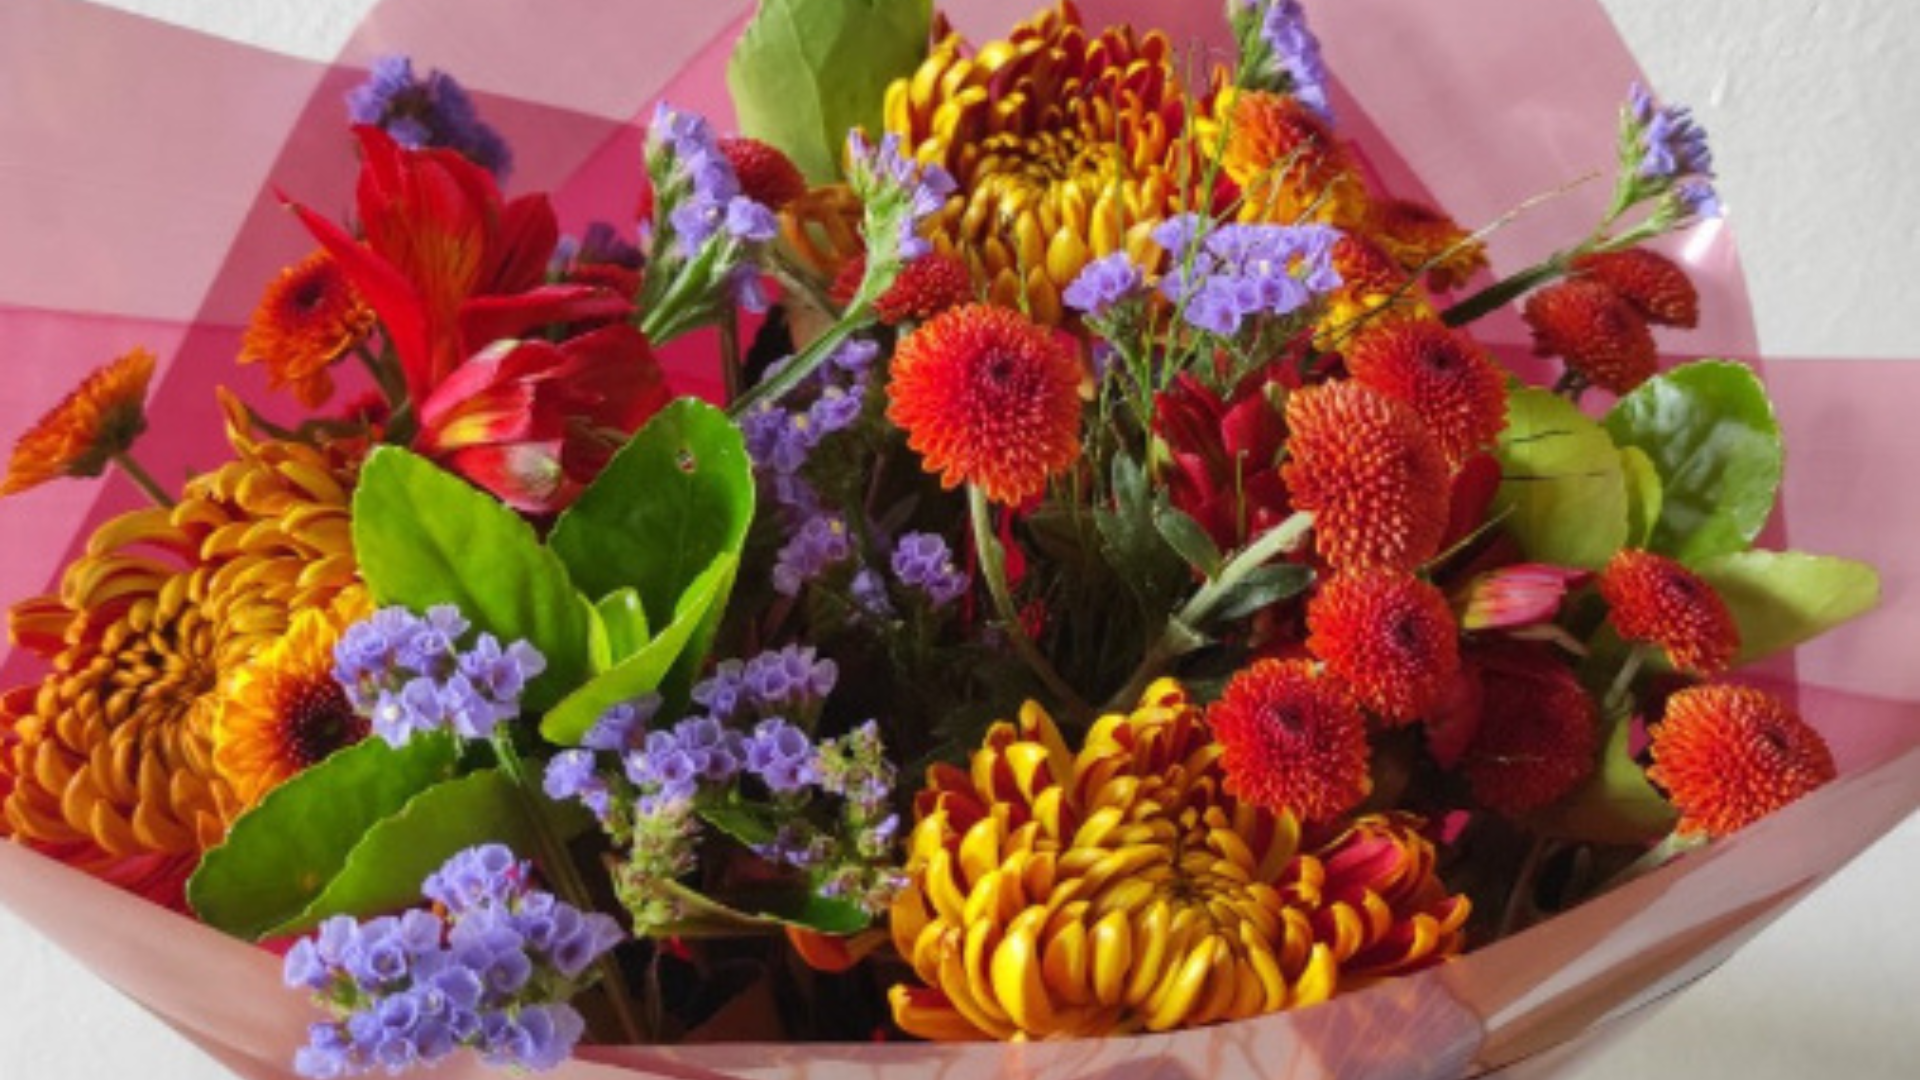 No Dia das Mães, Rappi fará entregas de buquês de flores em até 10 minutos 